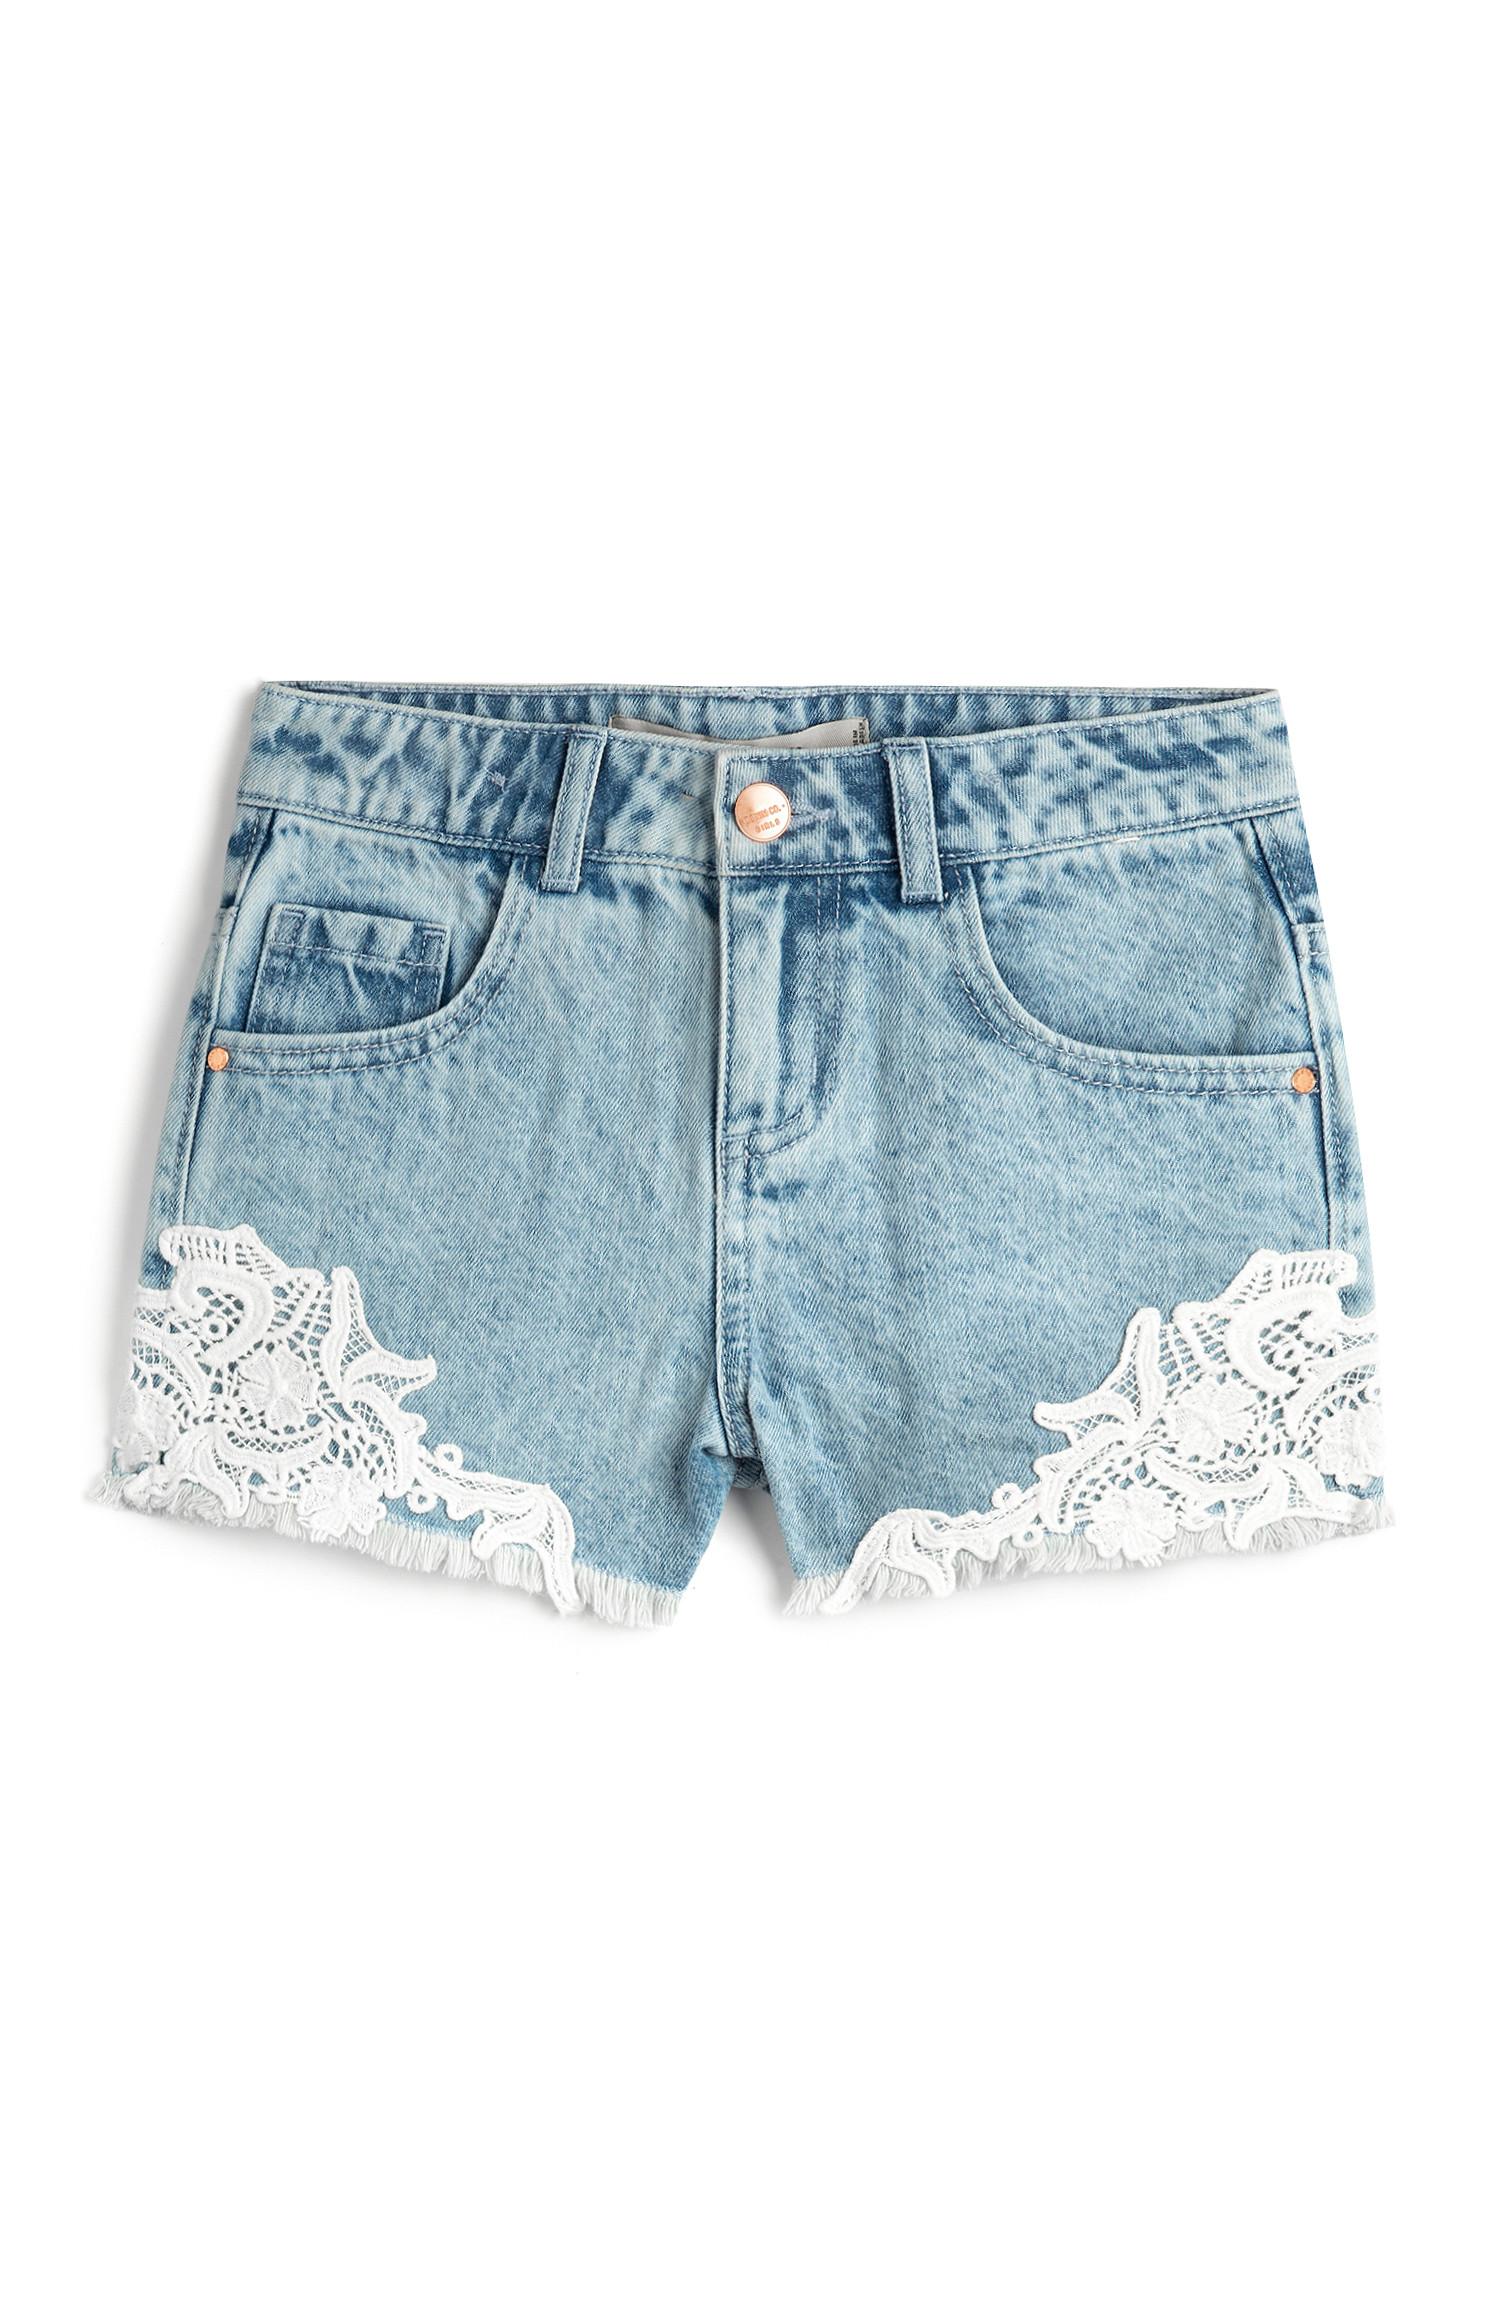 girls summer shorts